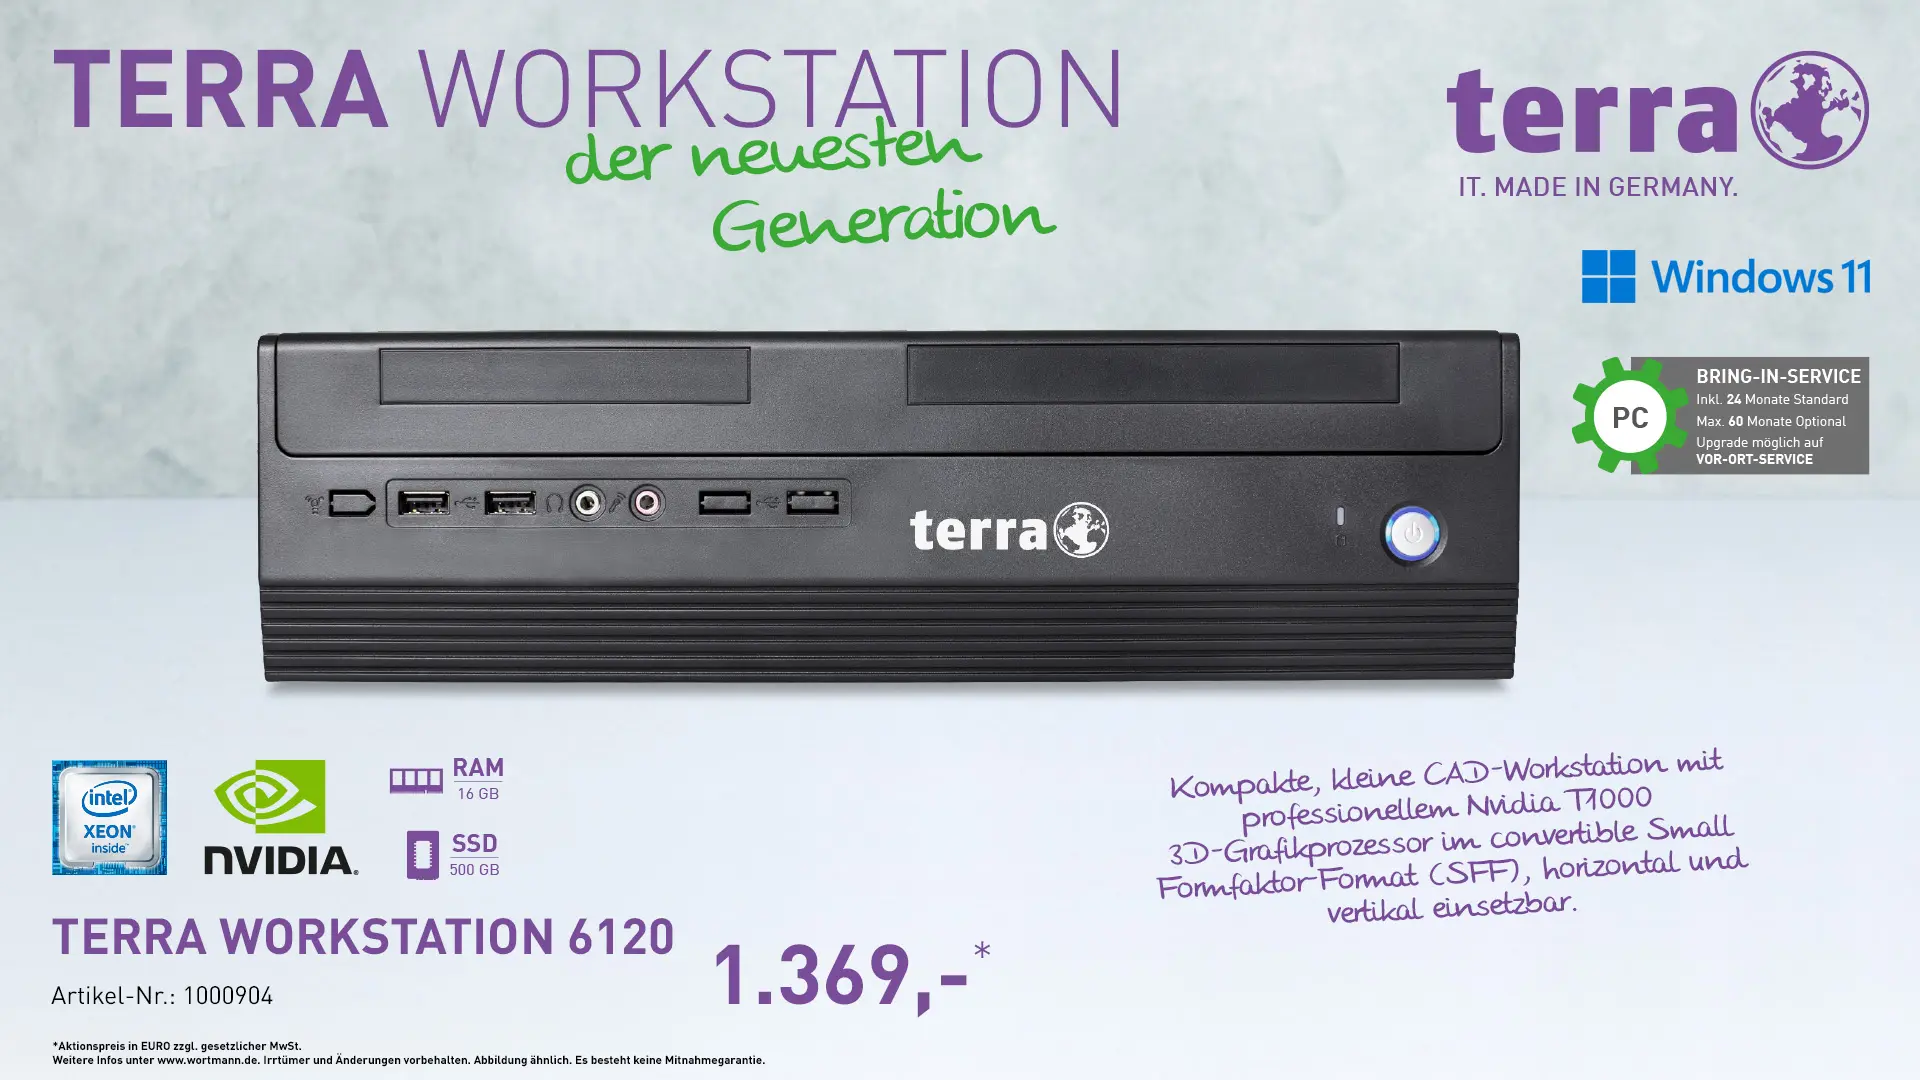 Terra Workstation 6120